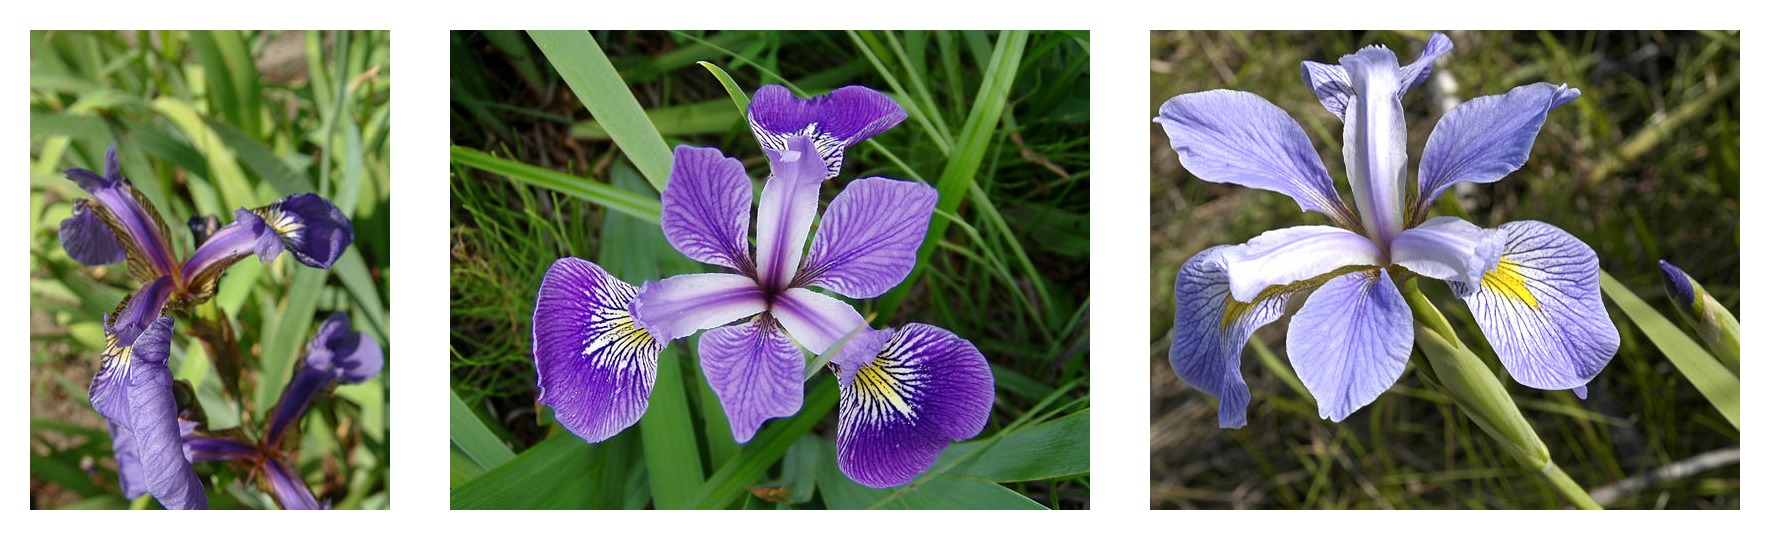 Geometría de los pétalos comparada para tres especies de iris: Iris setosa, Iris virginica e Iris versicolor